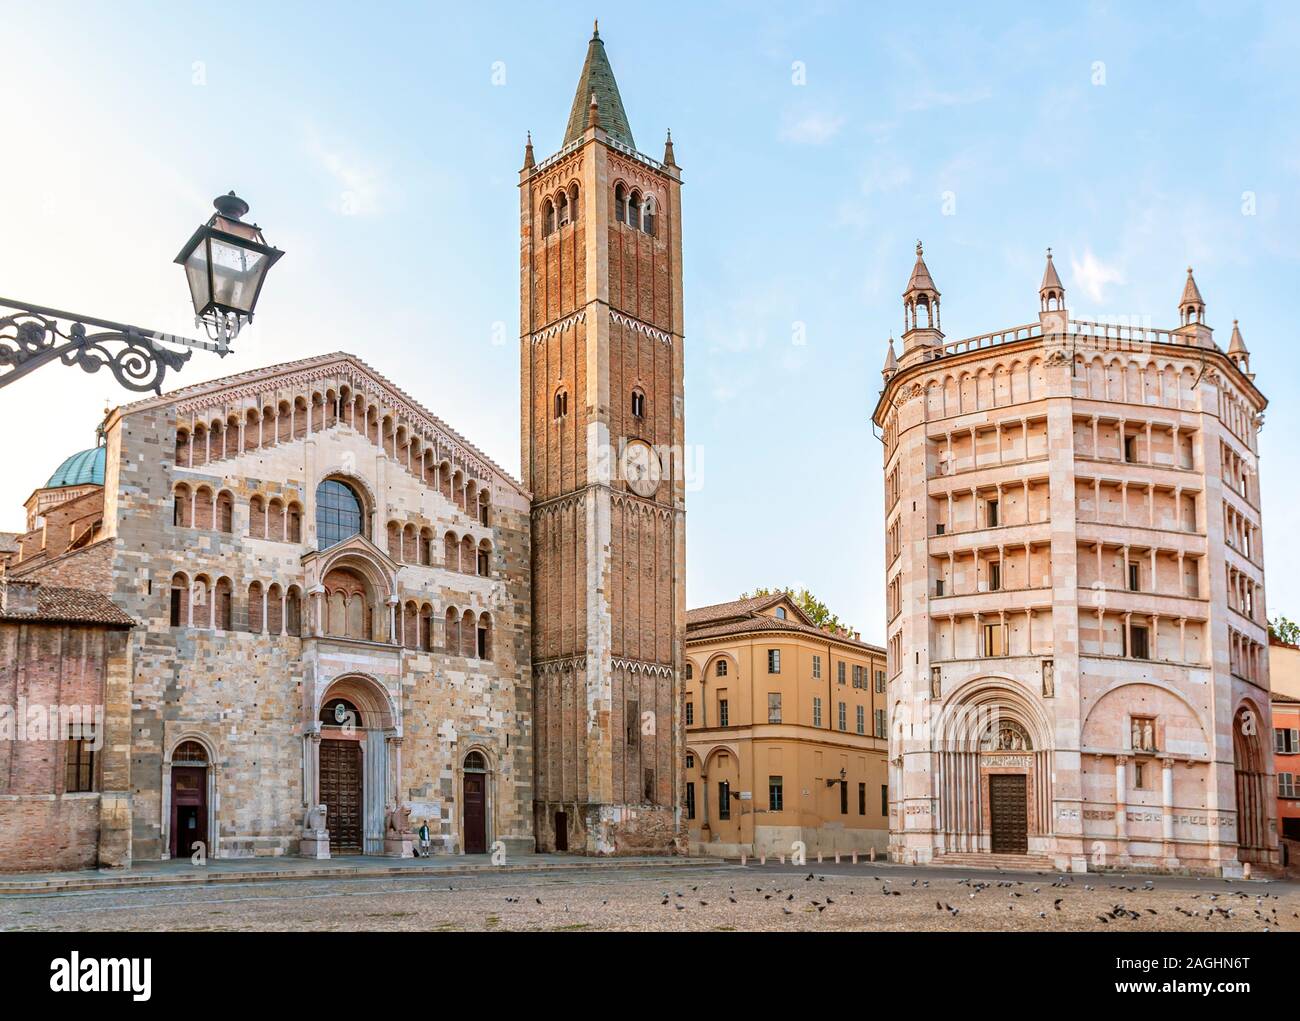 Am frühen Morgen am Domplatz im Zentrum historischen Stadt Parma, Emilia-Romagna, Italien. Stockfoto